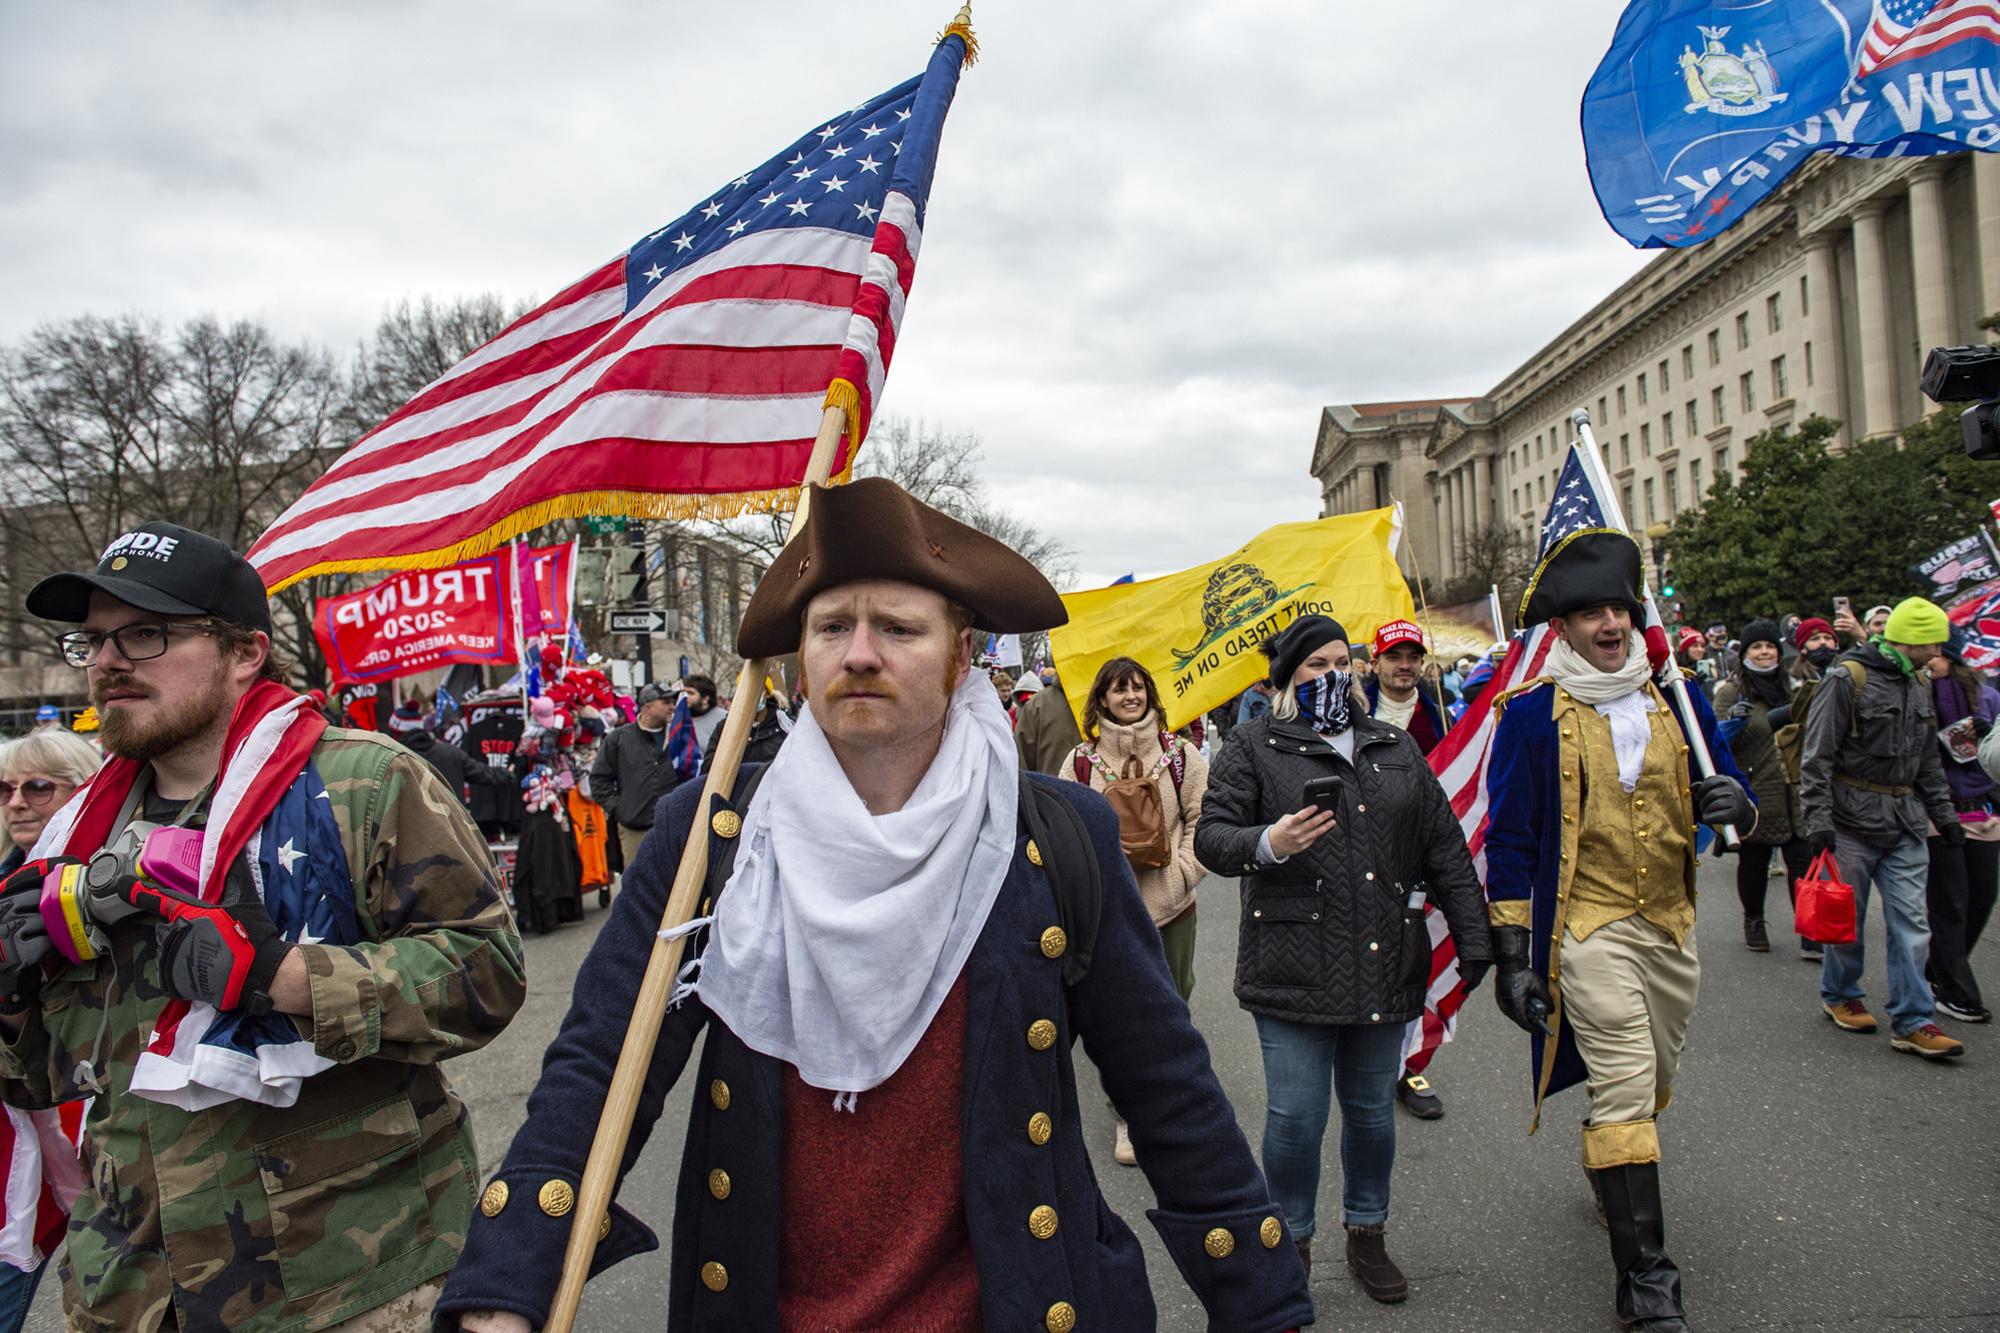 Drapeaux et costumes : décryptage des symboles aperçus lors de l'invasion du capitole aux USA